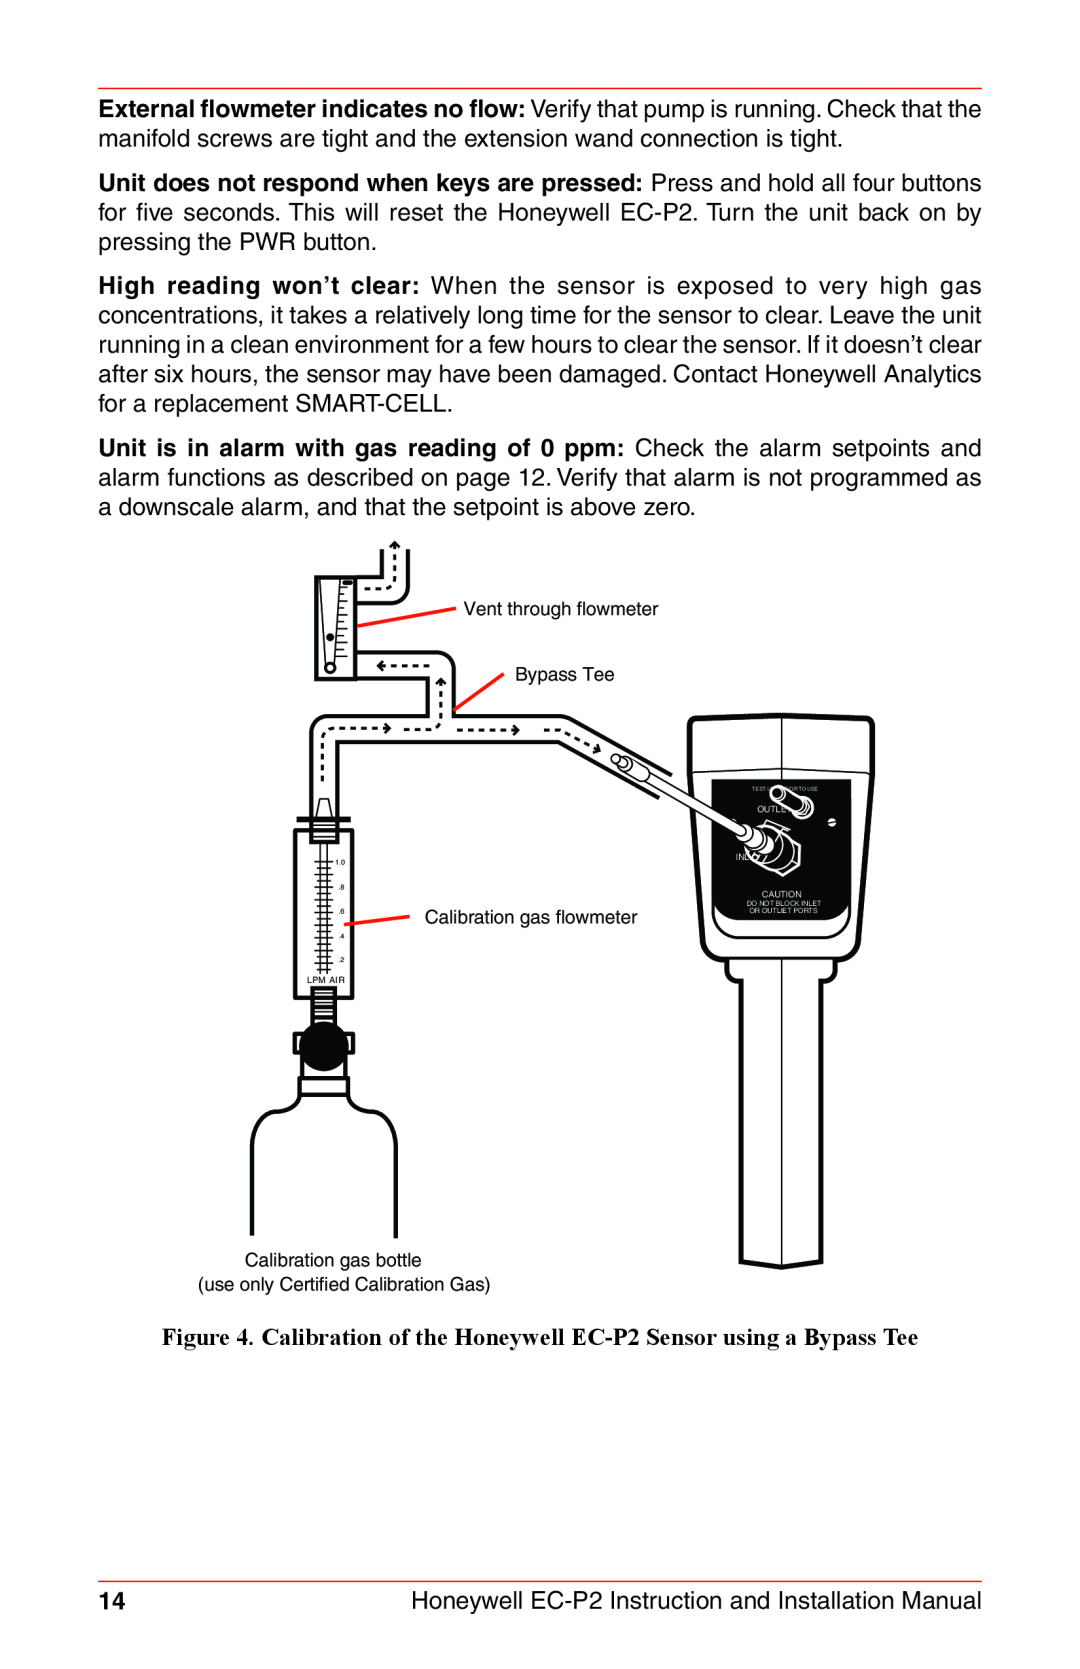 Honeywell EC-P2 Vent through flowmeter Bypass Tee, Calibration gas flowmeter, Calibration gas bottle, Lpm Air 